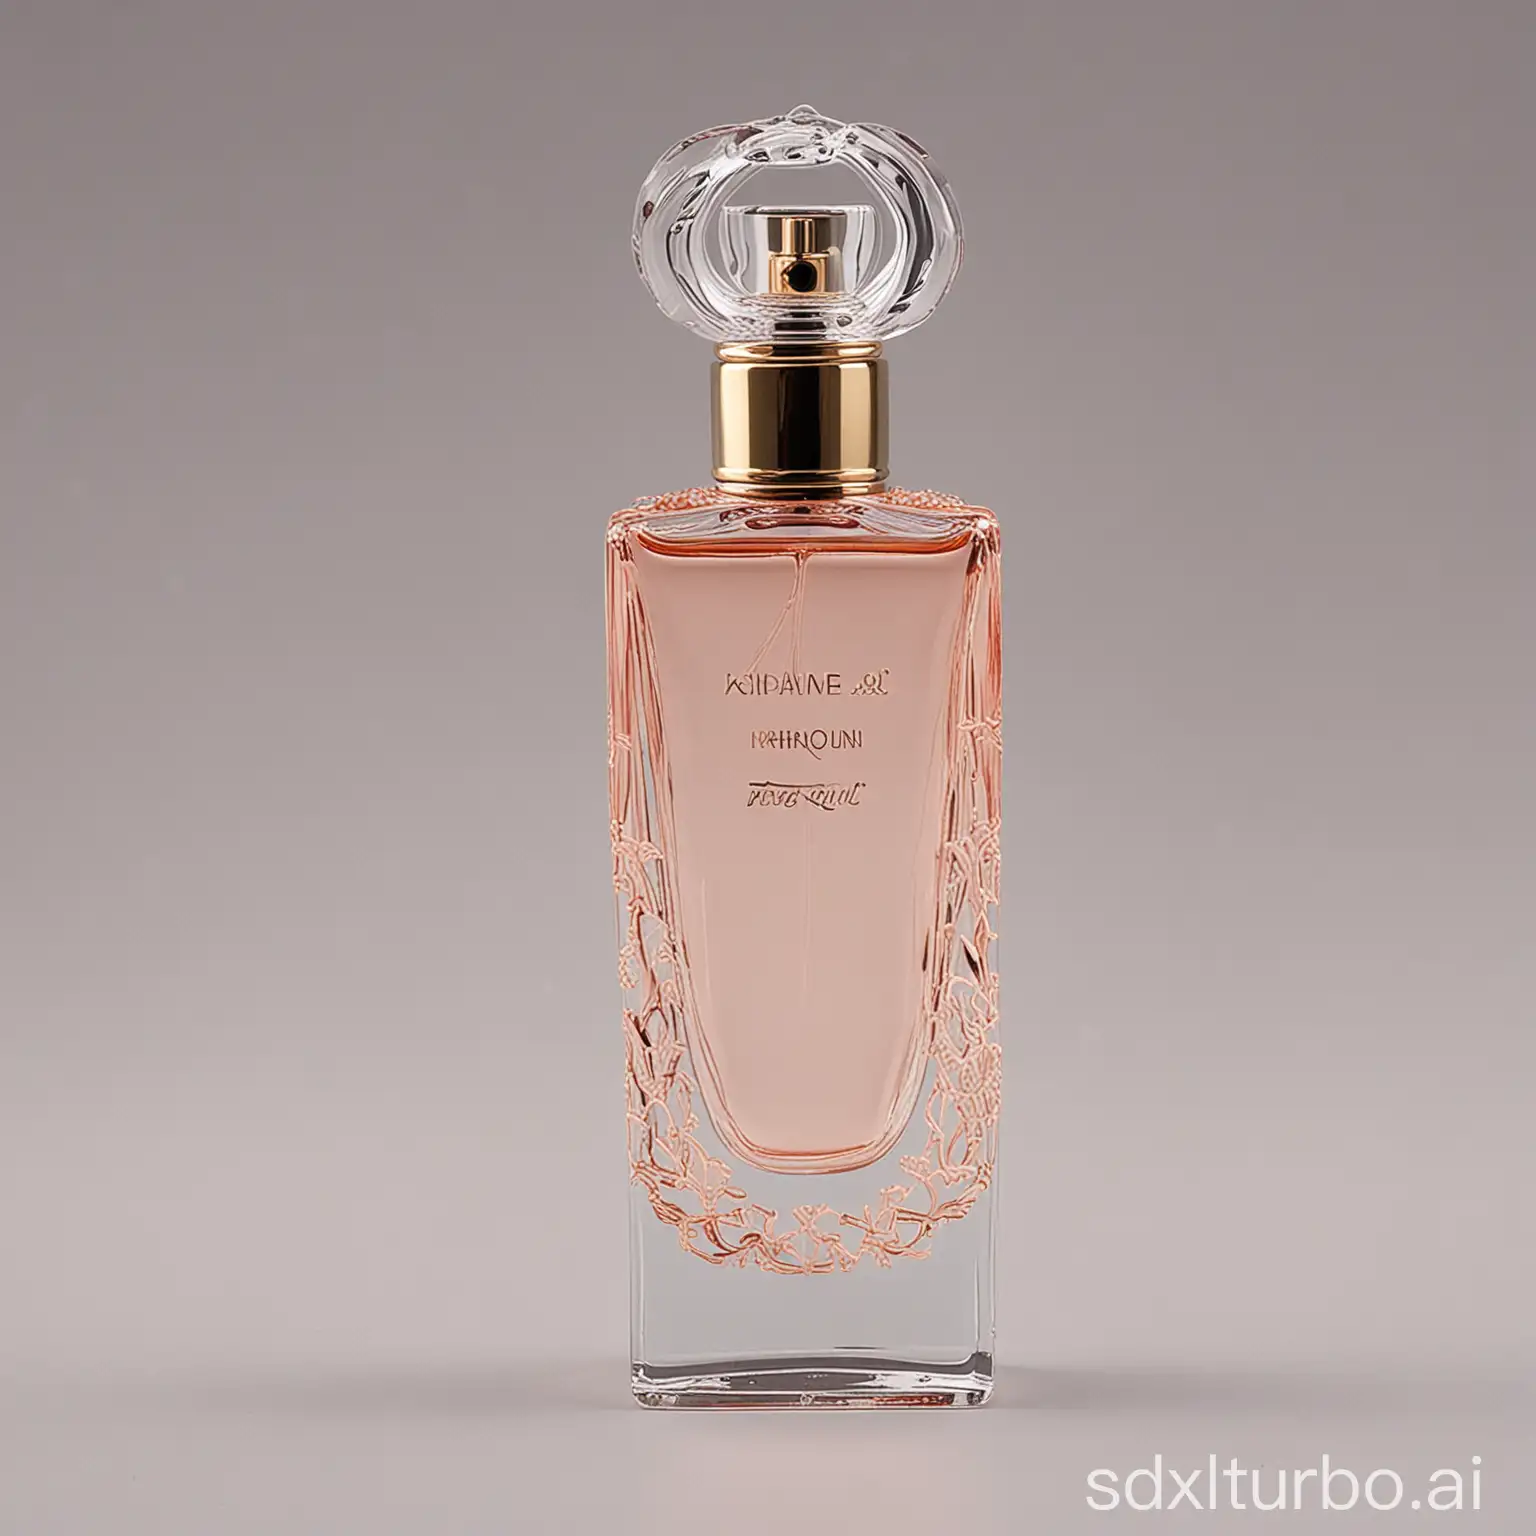 Luxury-Ladies-Perfume-Bottle-Packaging-with-Floral-Designs